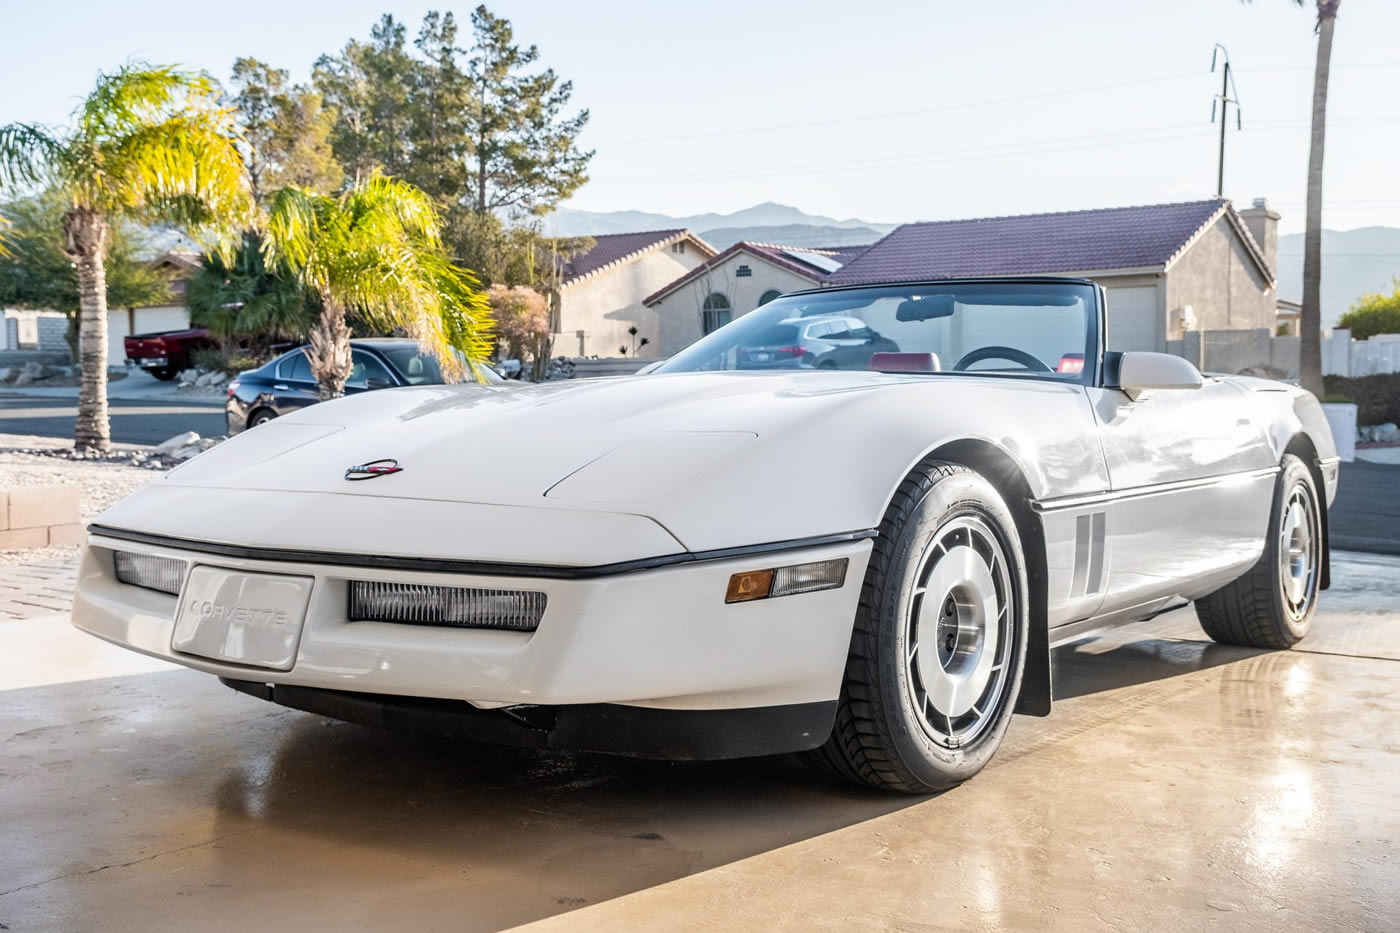 1987 Corvette Convertible in White